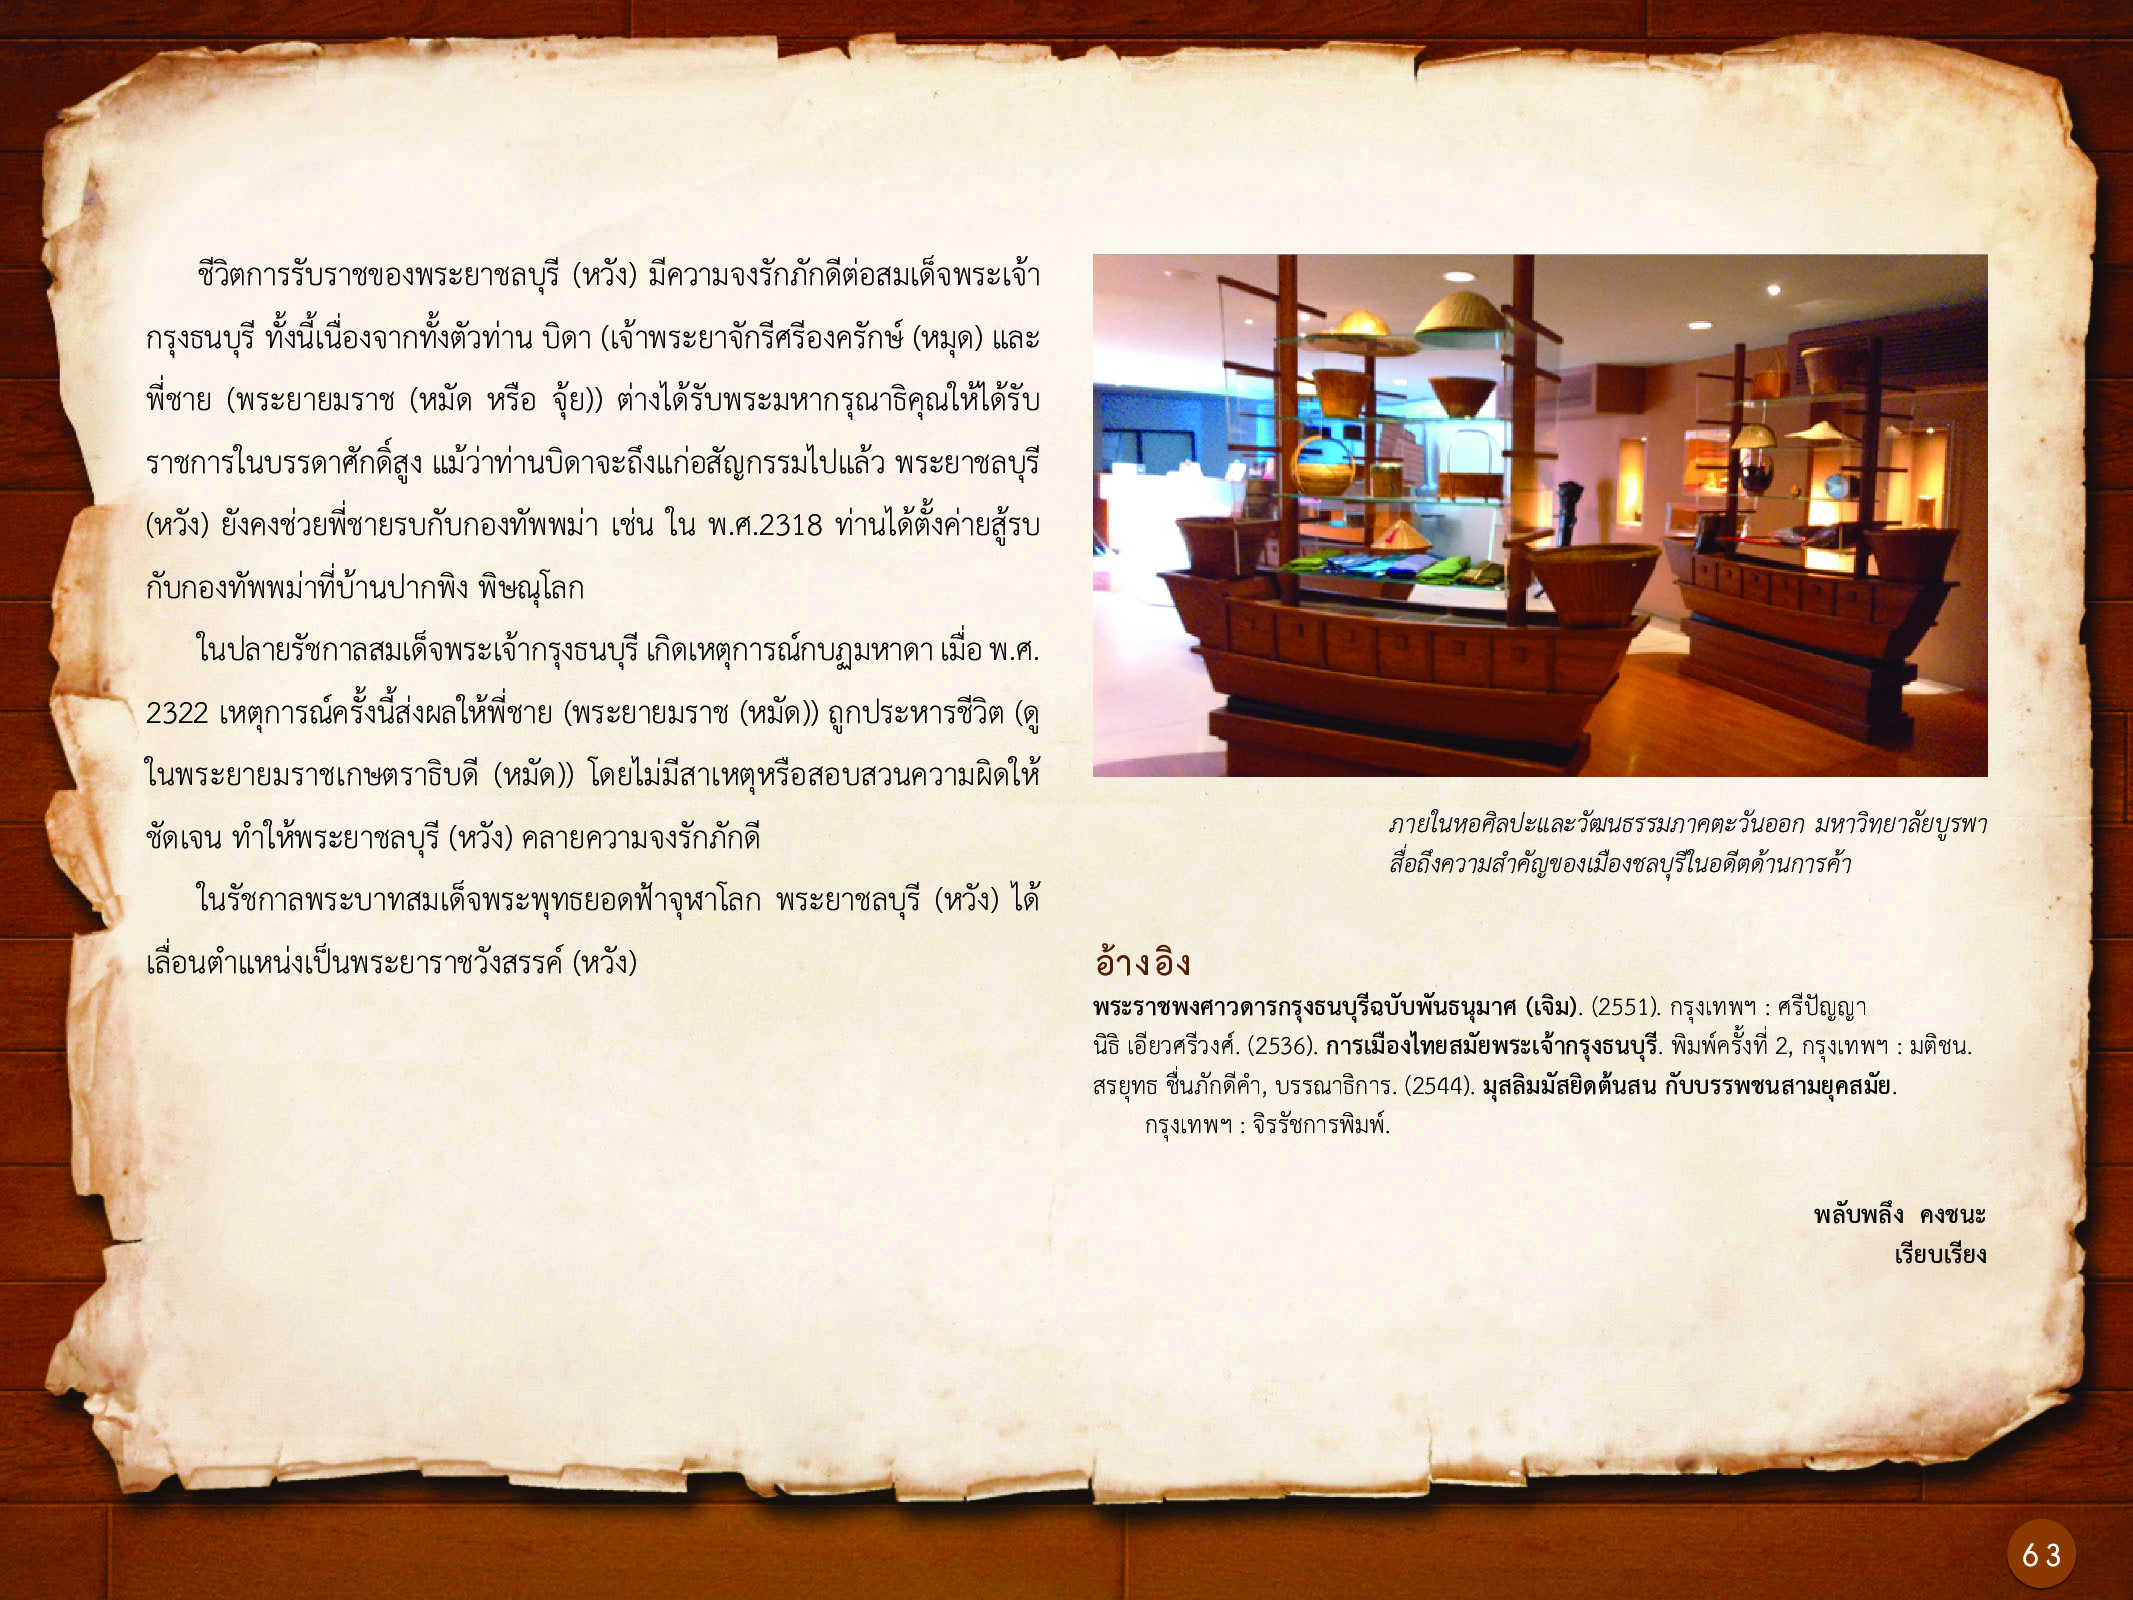 ประวัติศาสตร์กรุงธนบุรี ./images/history_dhonburi/63.jpg